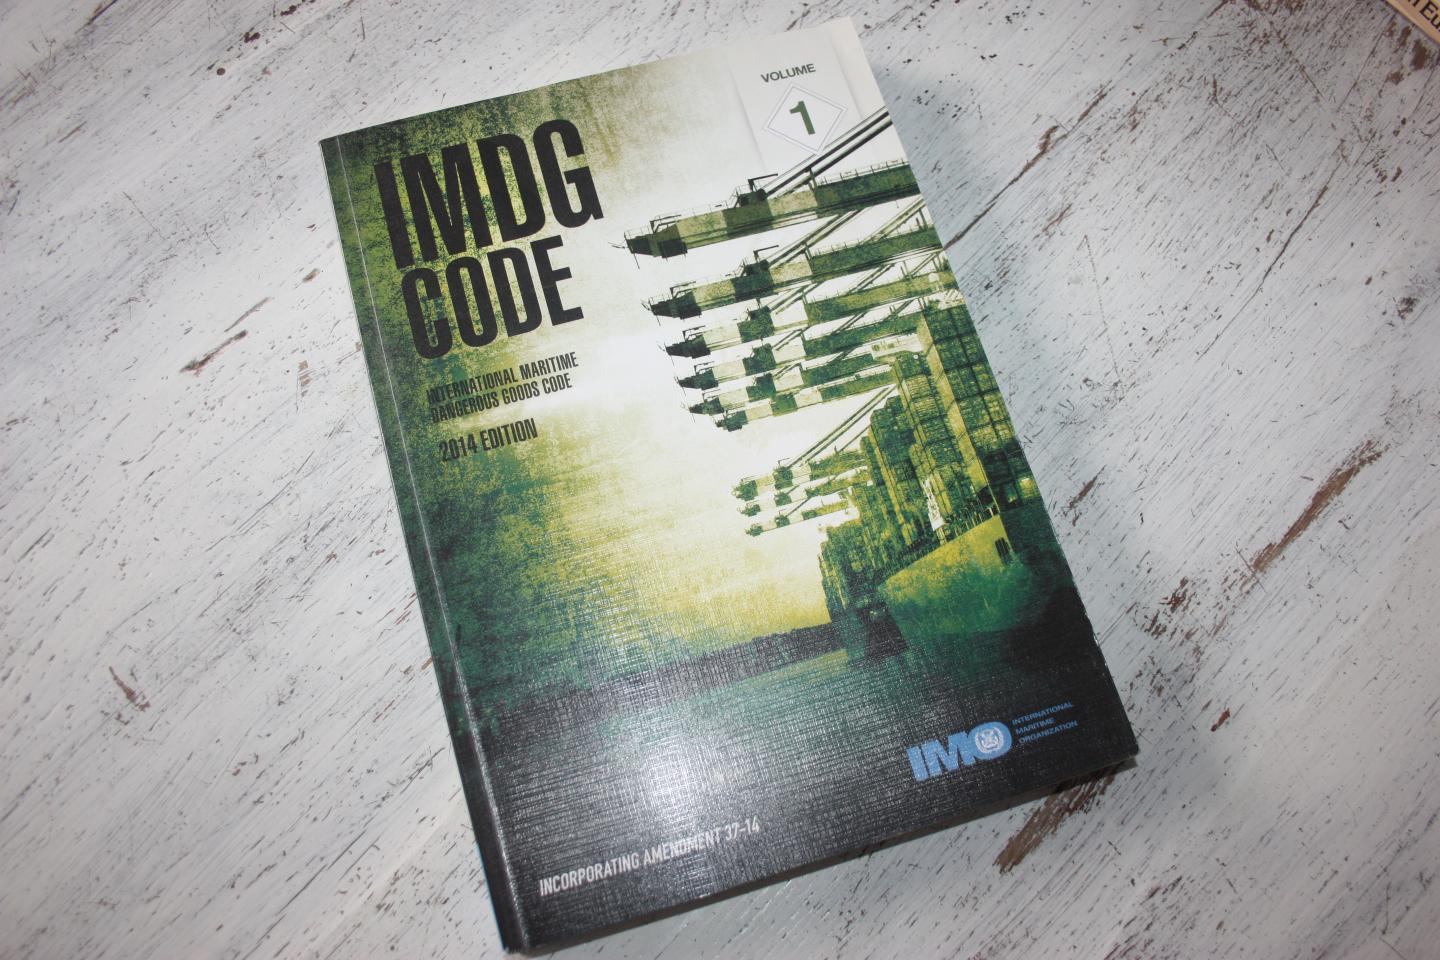  - IMDG CODE volume 1 en 2